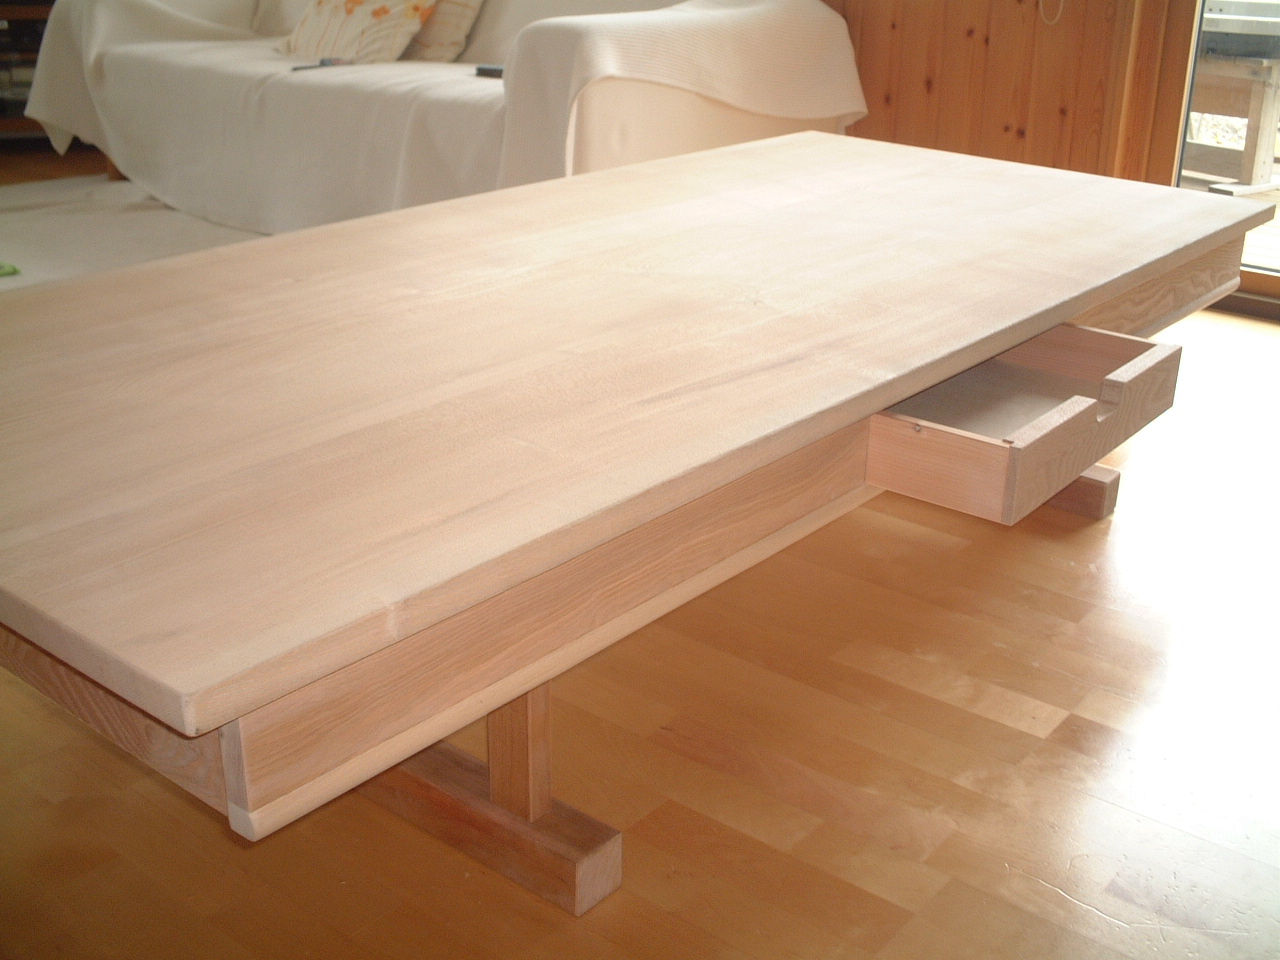 タモダイニングテーブル : 天然ムク家具とナチュラル空間のレンタルスペース すっぴん家具 マルタ